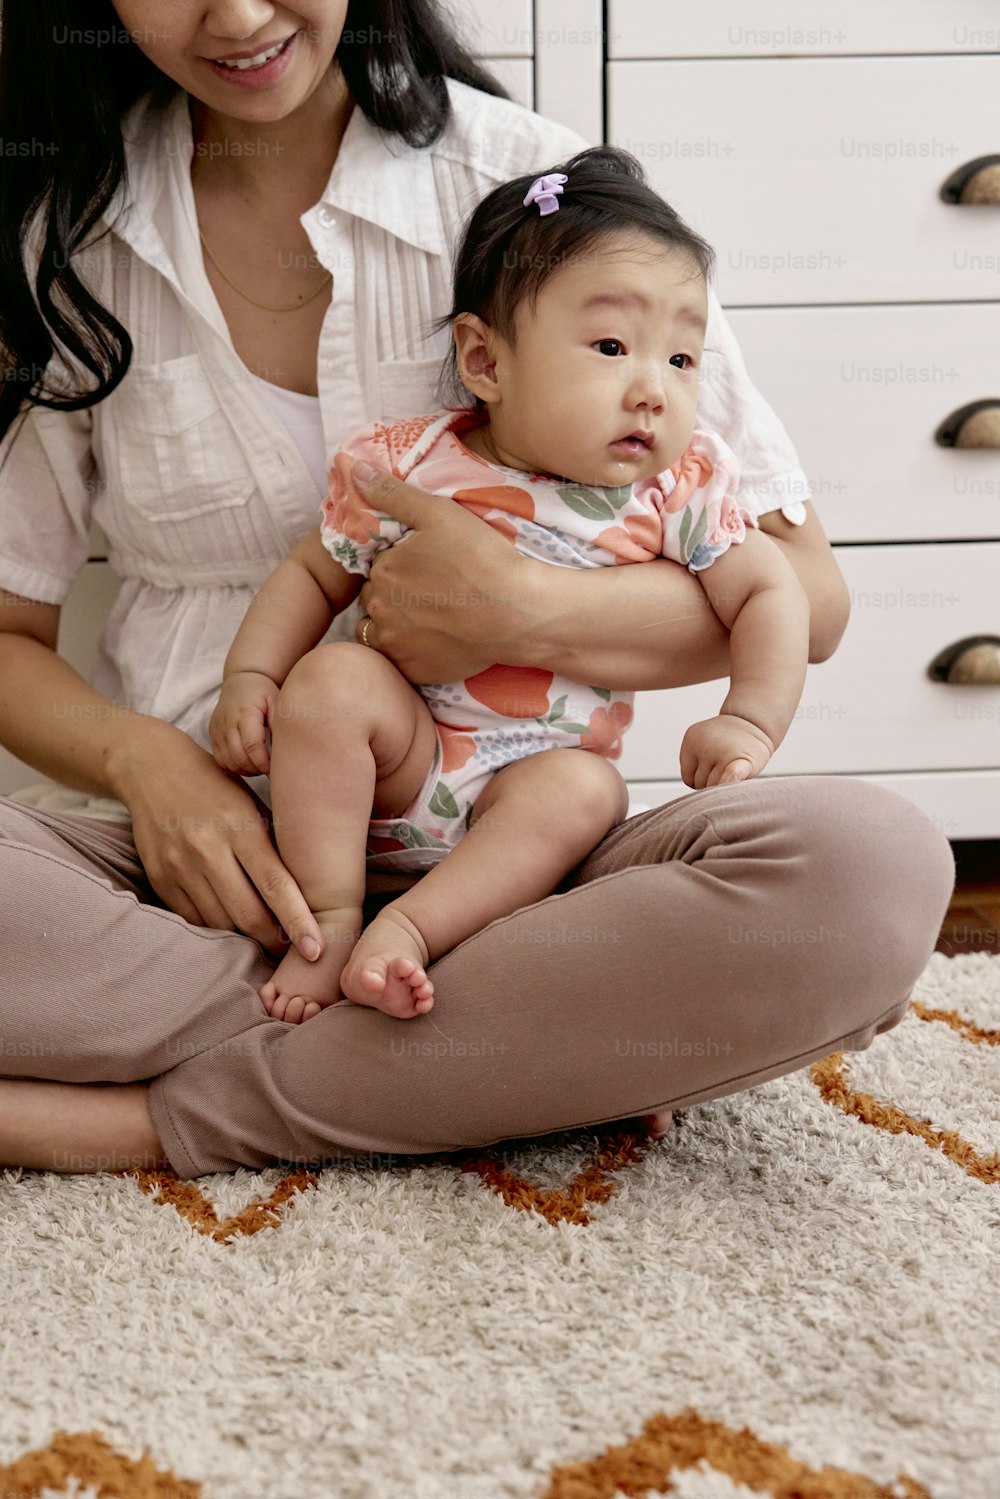 una donna seduta sul pavimento che tiene in braccio un bambino